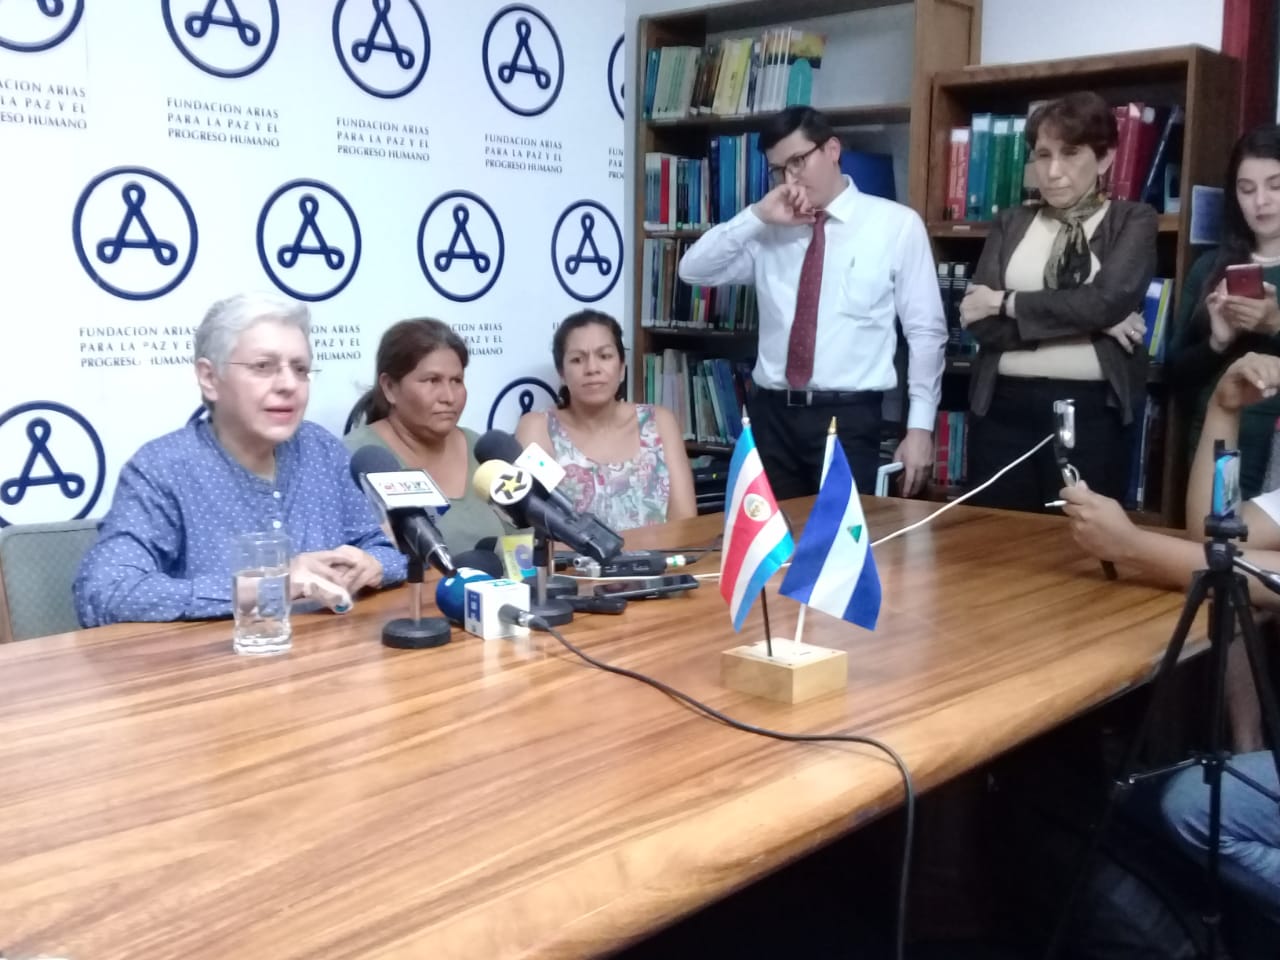 Ana Quirós denunciará a nivel internacional las serias violaciones de derechos humanos tras ser deportada a Costa Rica. Foto: Josué Garay